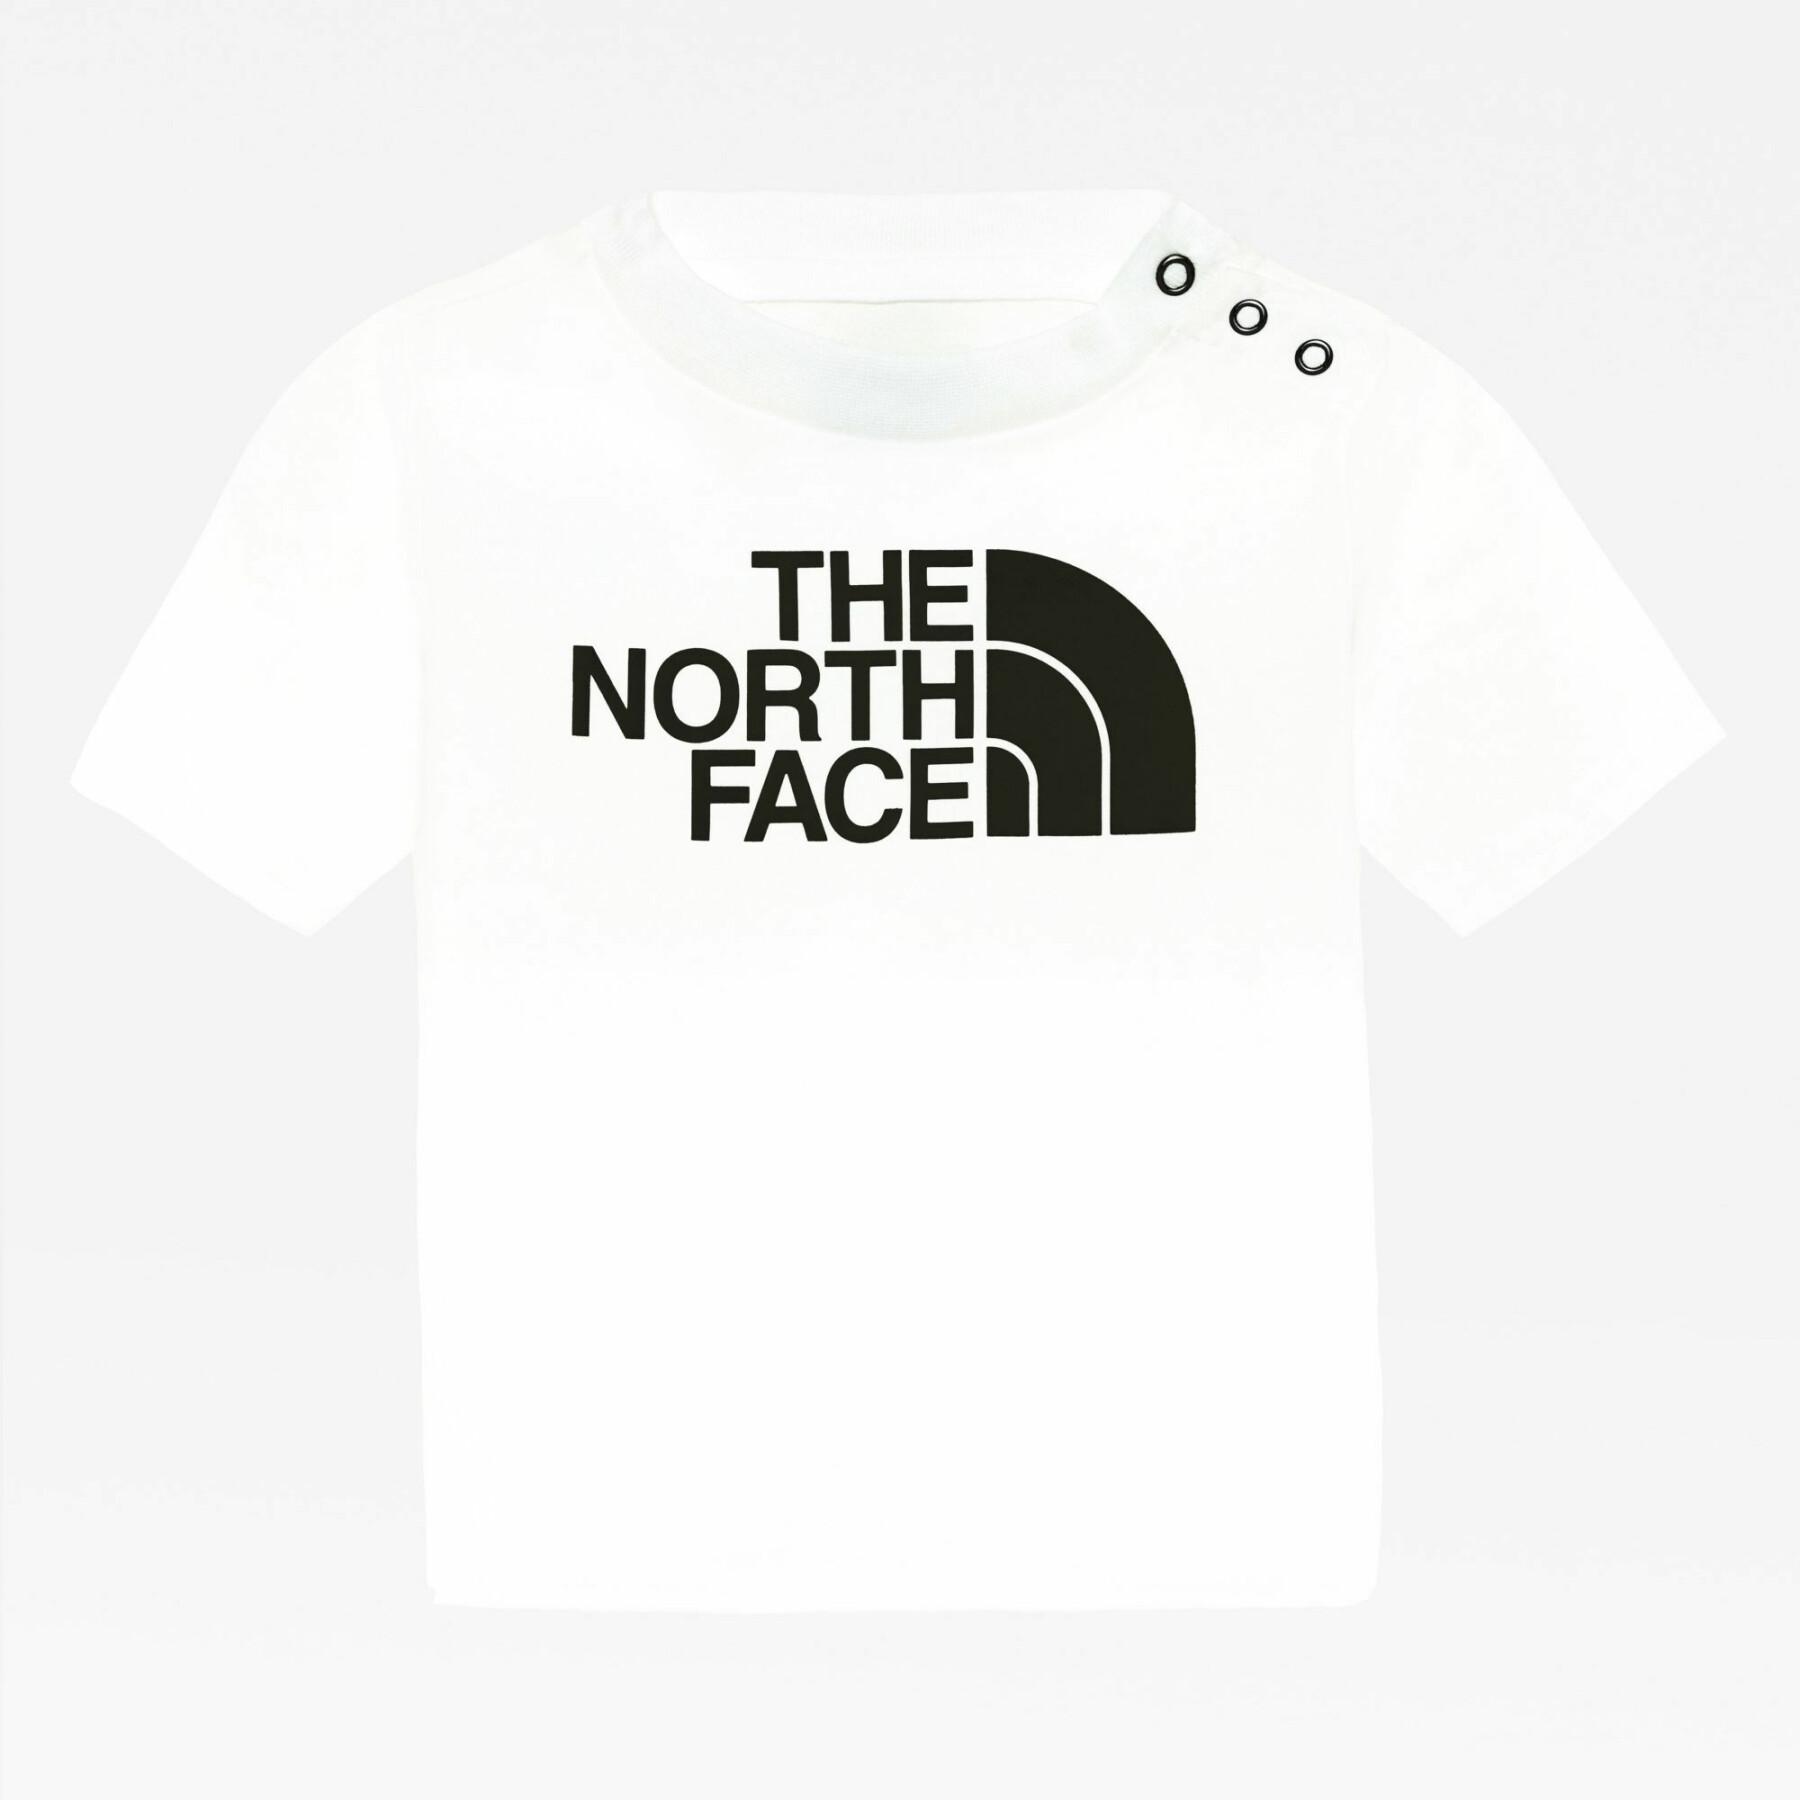 Maglietta per bambini The North Face Easy II